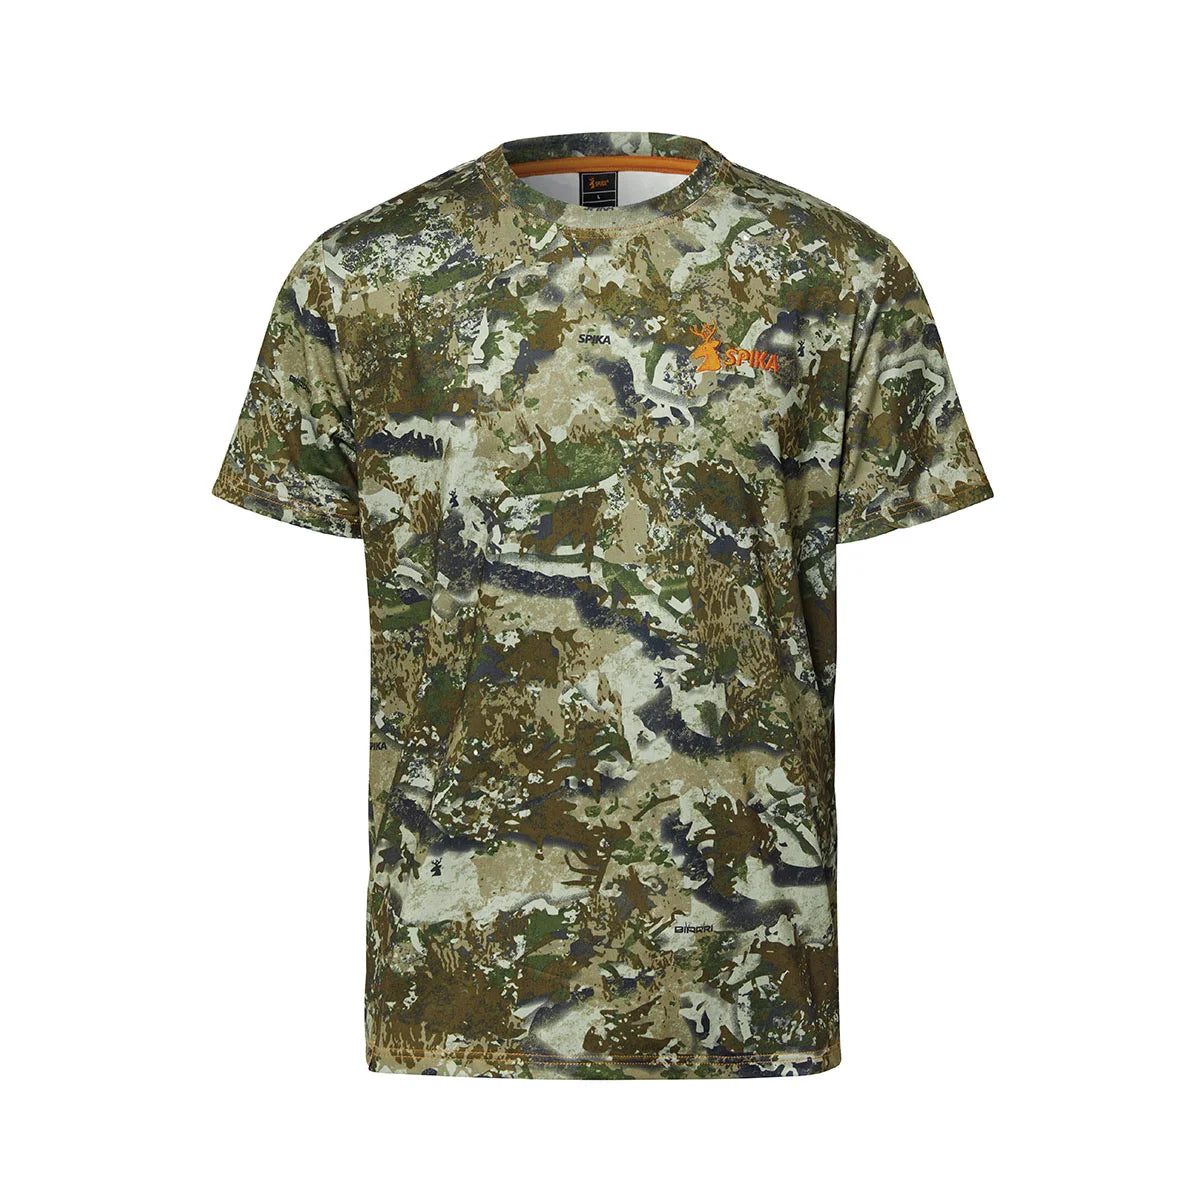 Spika - Trail T-Shirt Mens - Biarri Camo